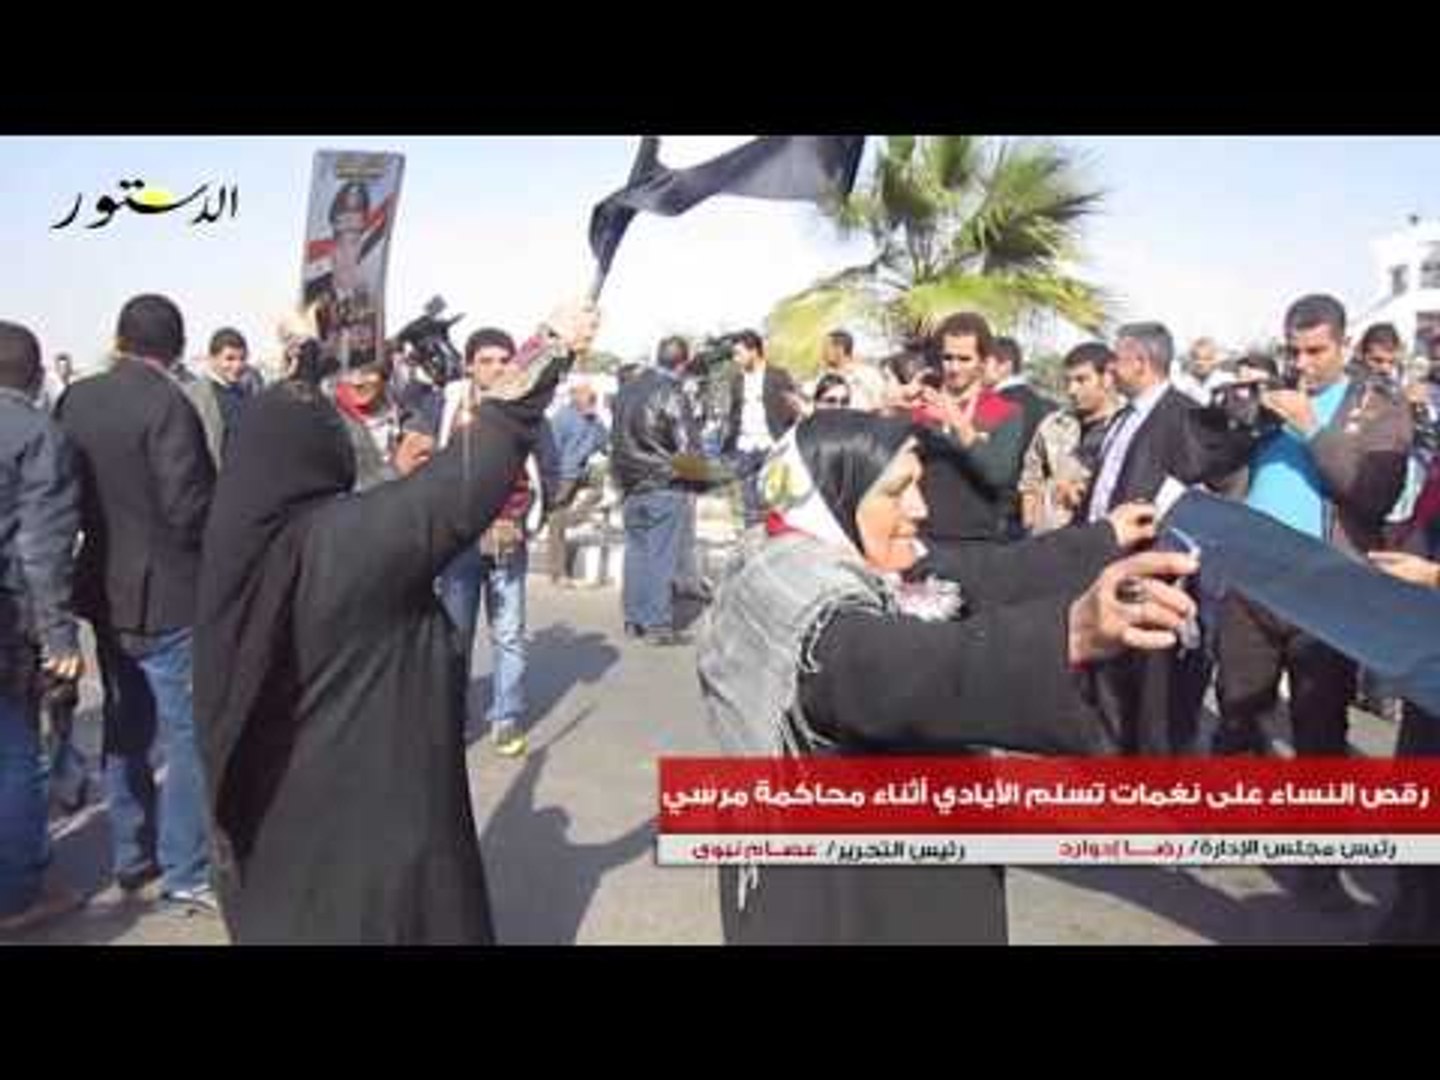 رقص النساء على نغمات تسلم الأيادي أثناء محاكمة مرسي - فيديو Dailymotion